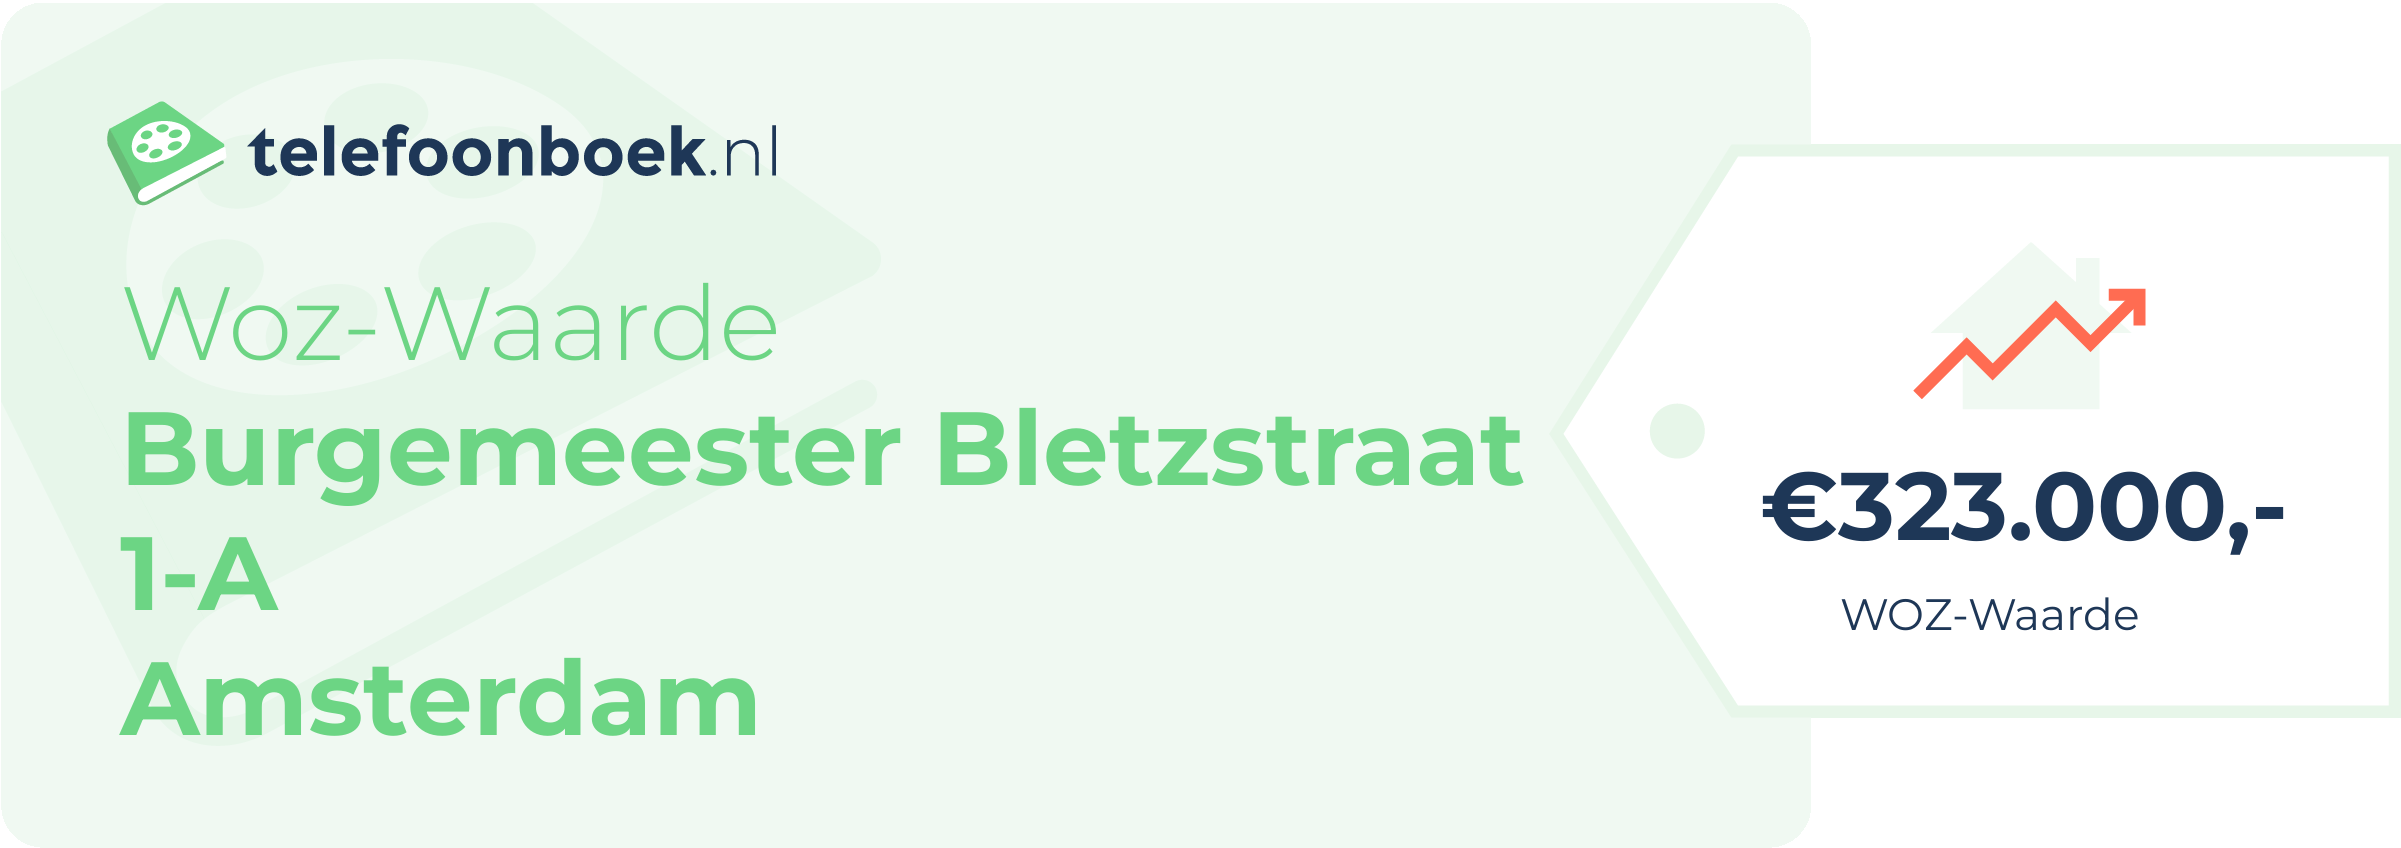 WOZ-waarde Burgemeester Bletzstraat 1-A Amsterdam